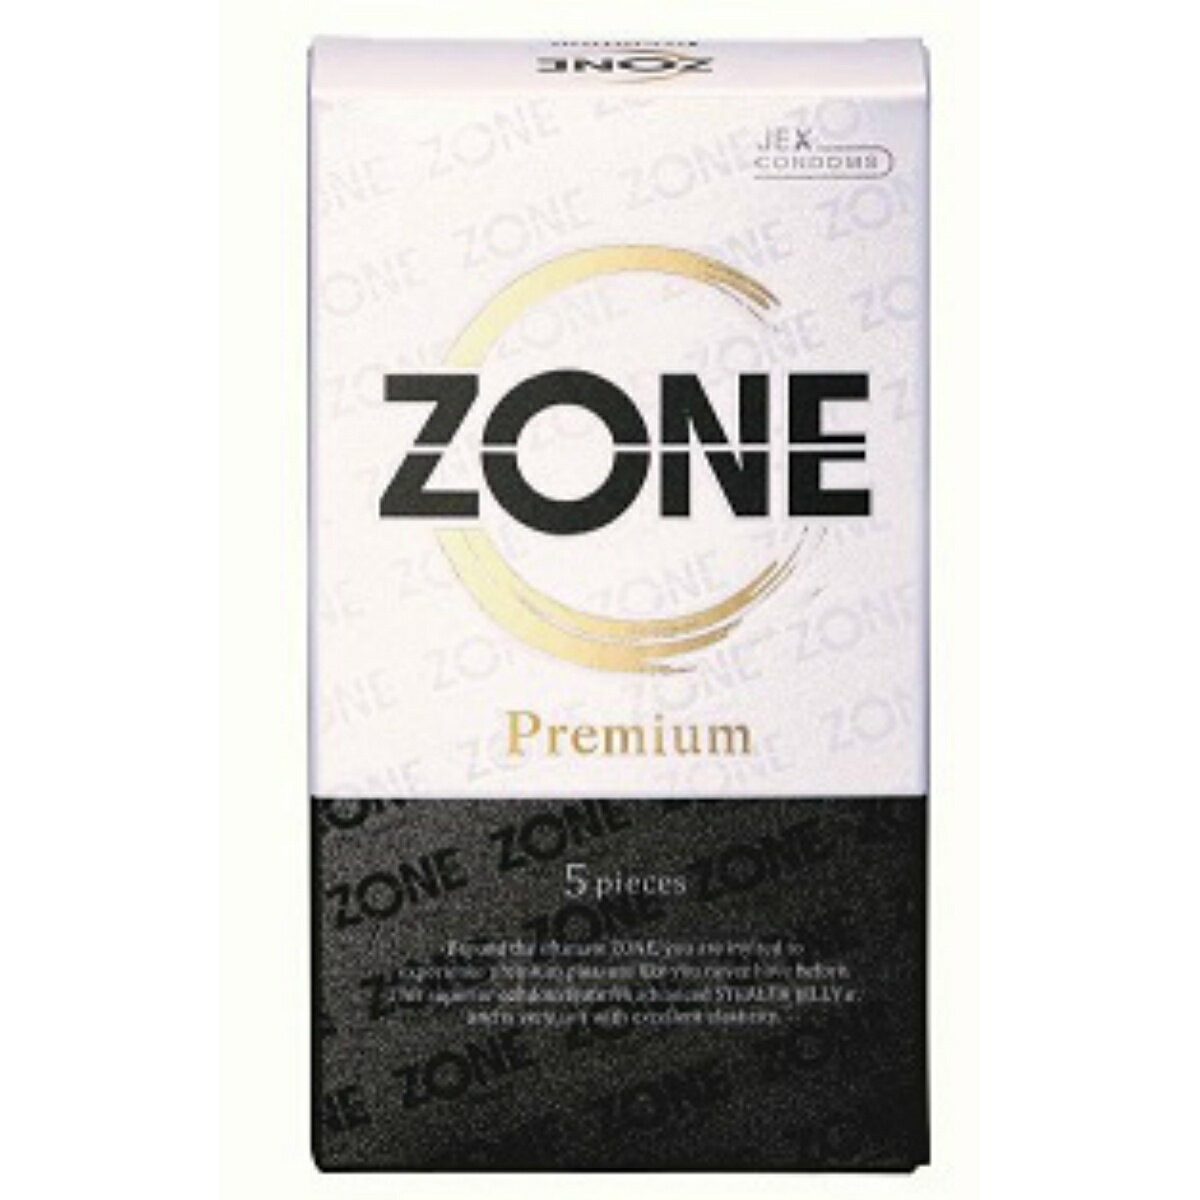 【送料込 まとめ買い×6点セット】ジェクス ZONE Premium ゾーンプレミアム 5pieces